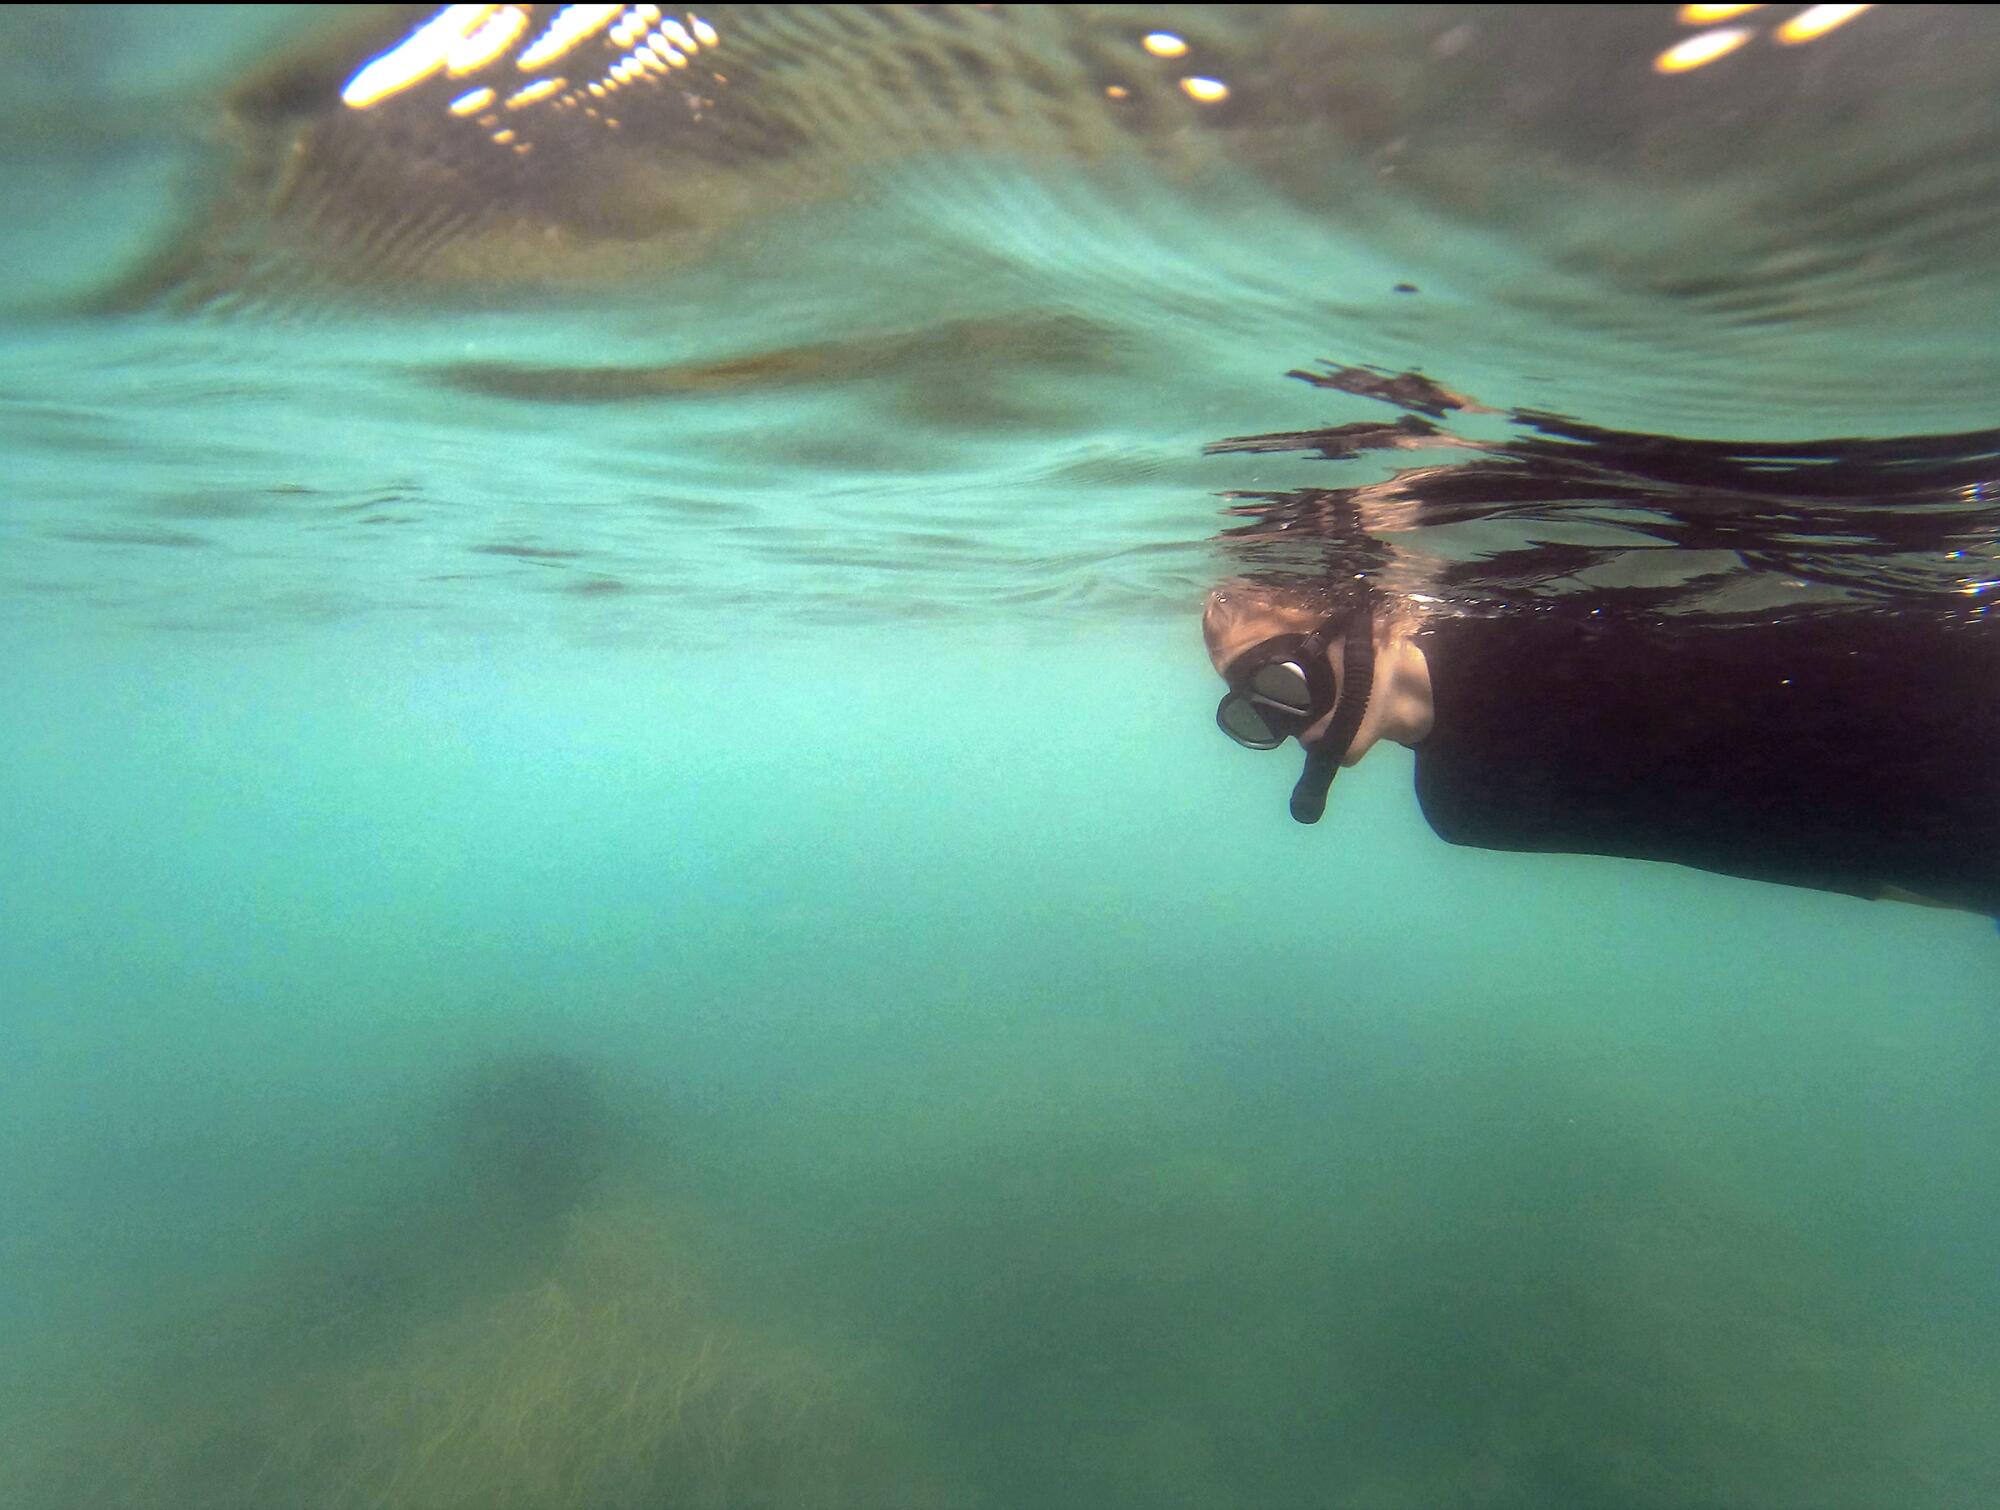 Josh Gailey swims in search of leopard sharks off La Jolla.